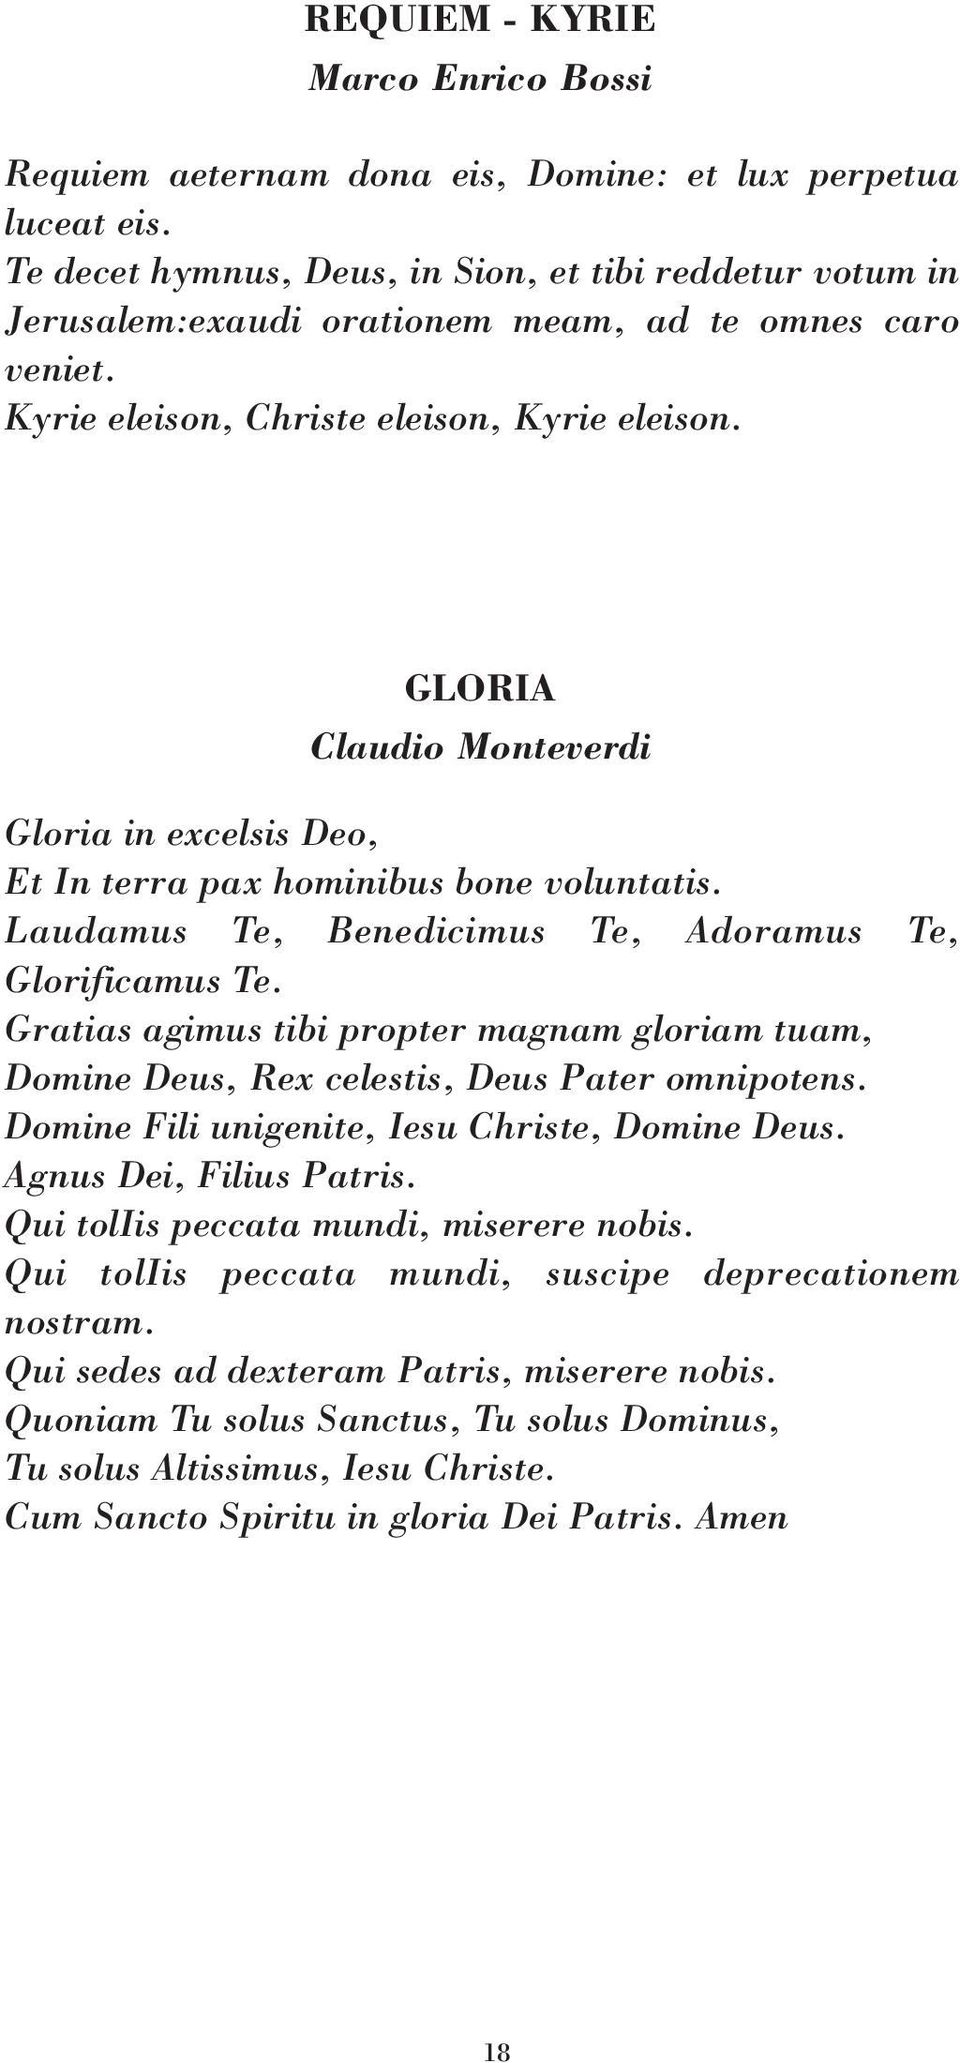 GLORIA Claudio Monteverdi Gloria in excelsis Deo, Et In terra pax hominibus bone voluntatis. Laudamus Te, Benedicimus Te, Adoramus Te, Glorificamus Te.